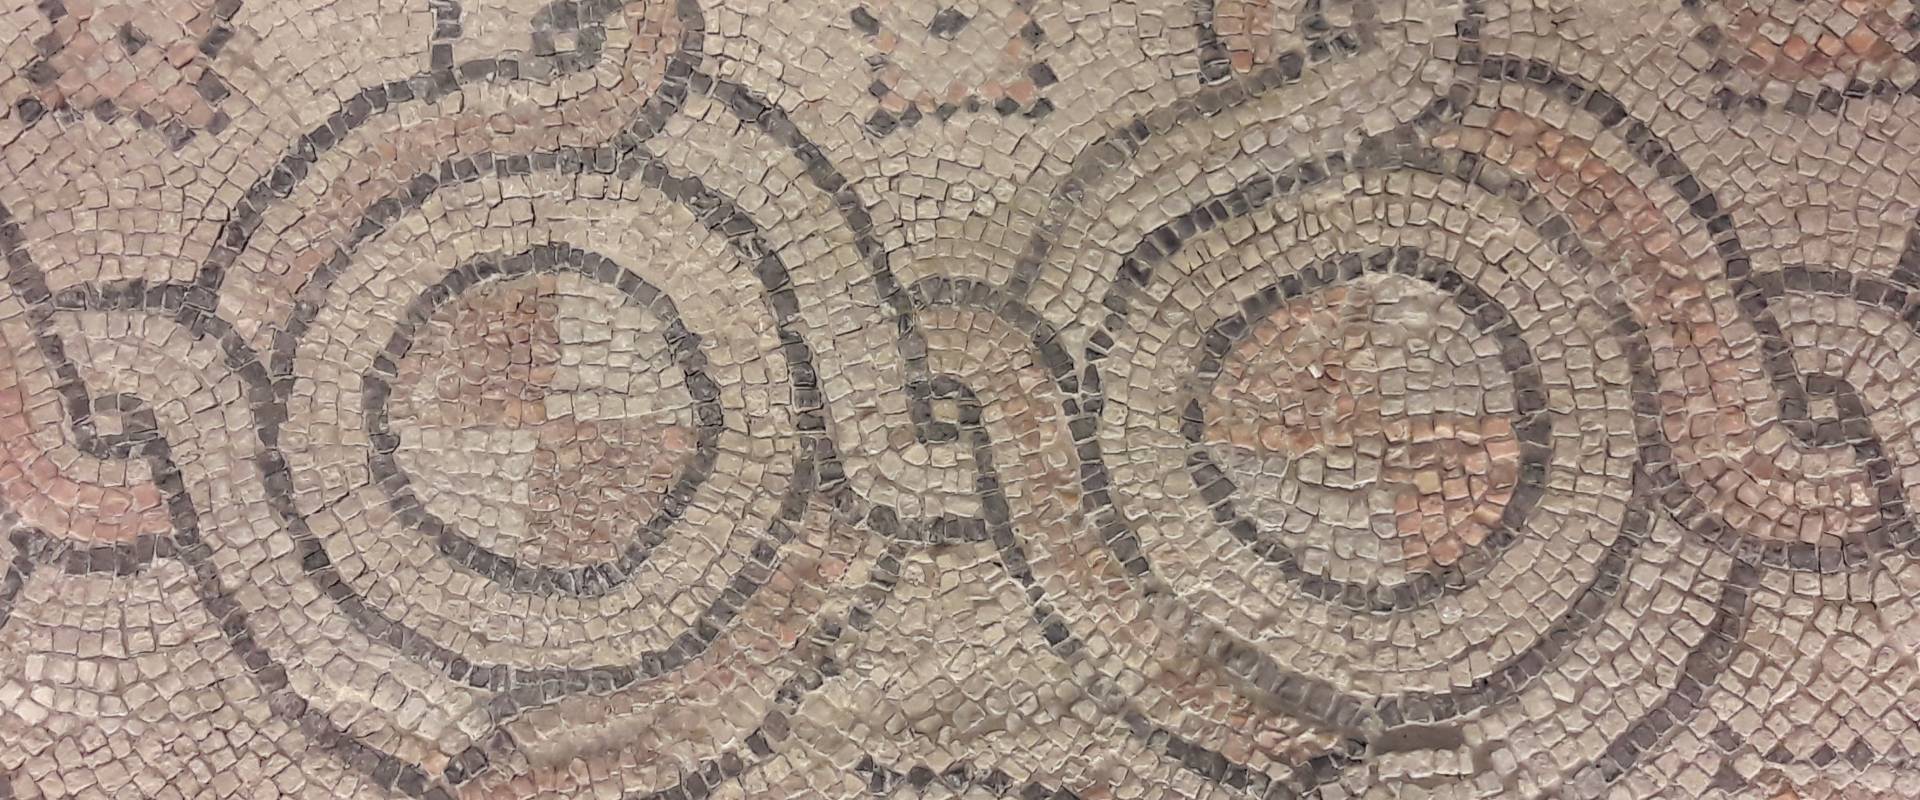 Ravenna - Domus tappeti di pietra - Dettaglio 8 foto di Ysogo